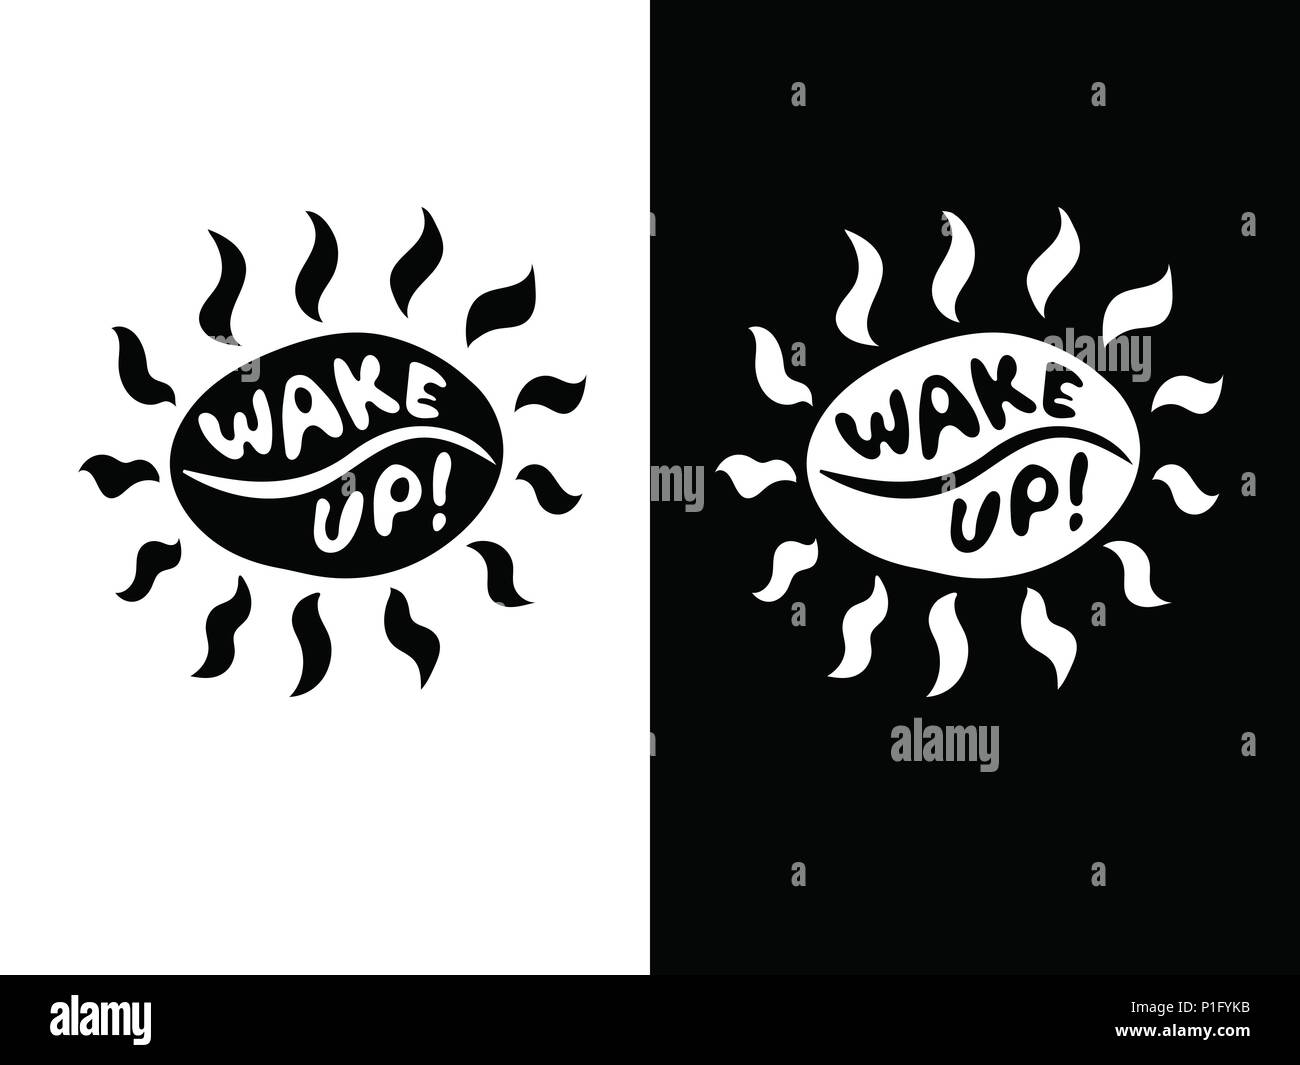 Lustig Schwarz und Weiß coffee bean Sonne mit Strahlen Symbol mit Schriftzug Wake Up! Stock Vektor